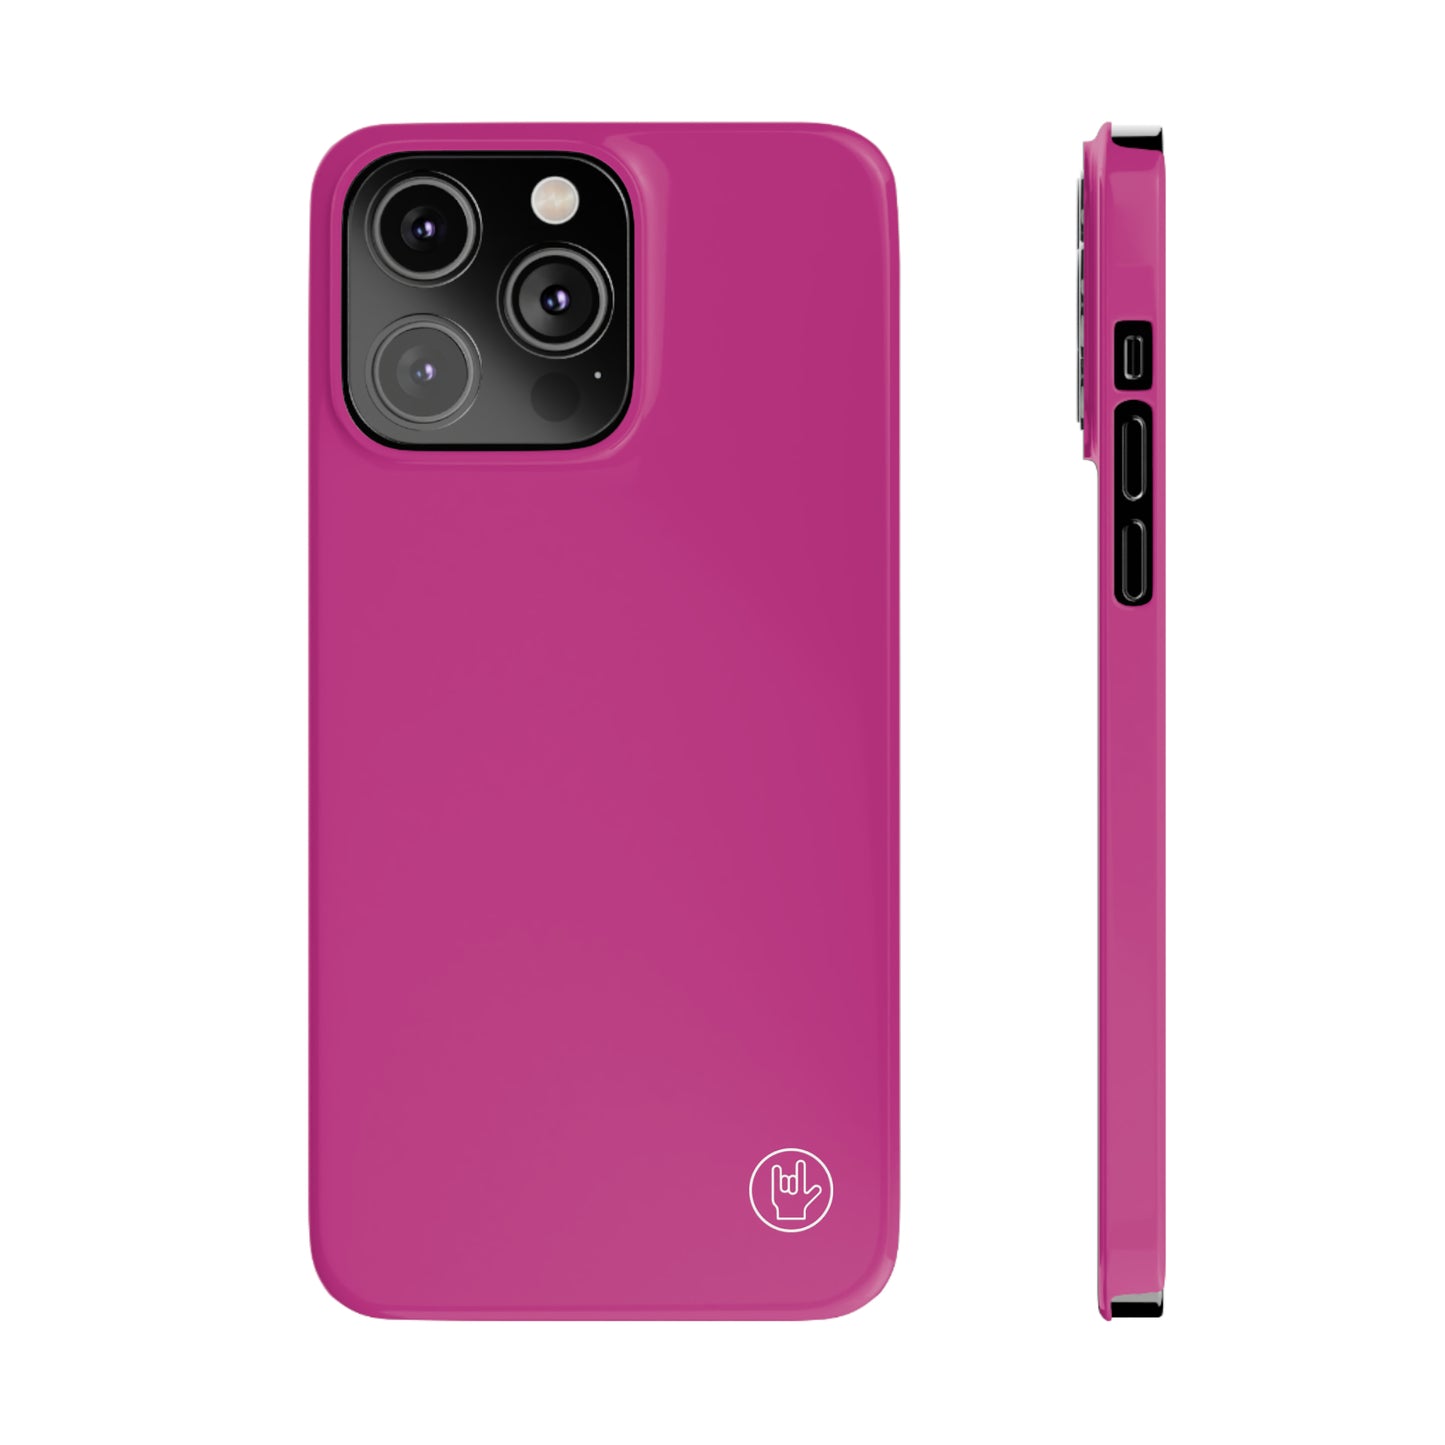 Pink Phone Case - Solid Color Phone Case - Premium Slim Phone Case